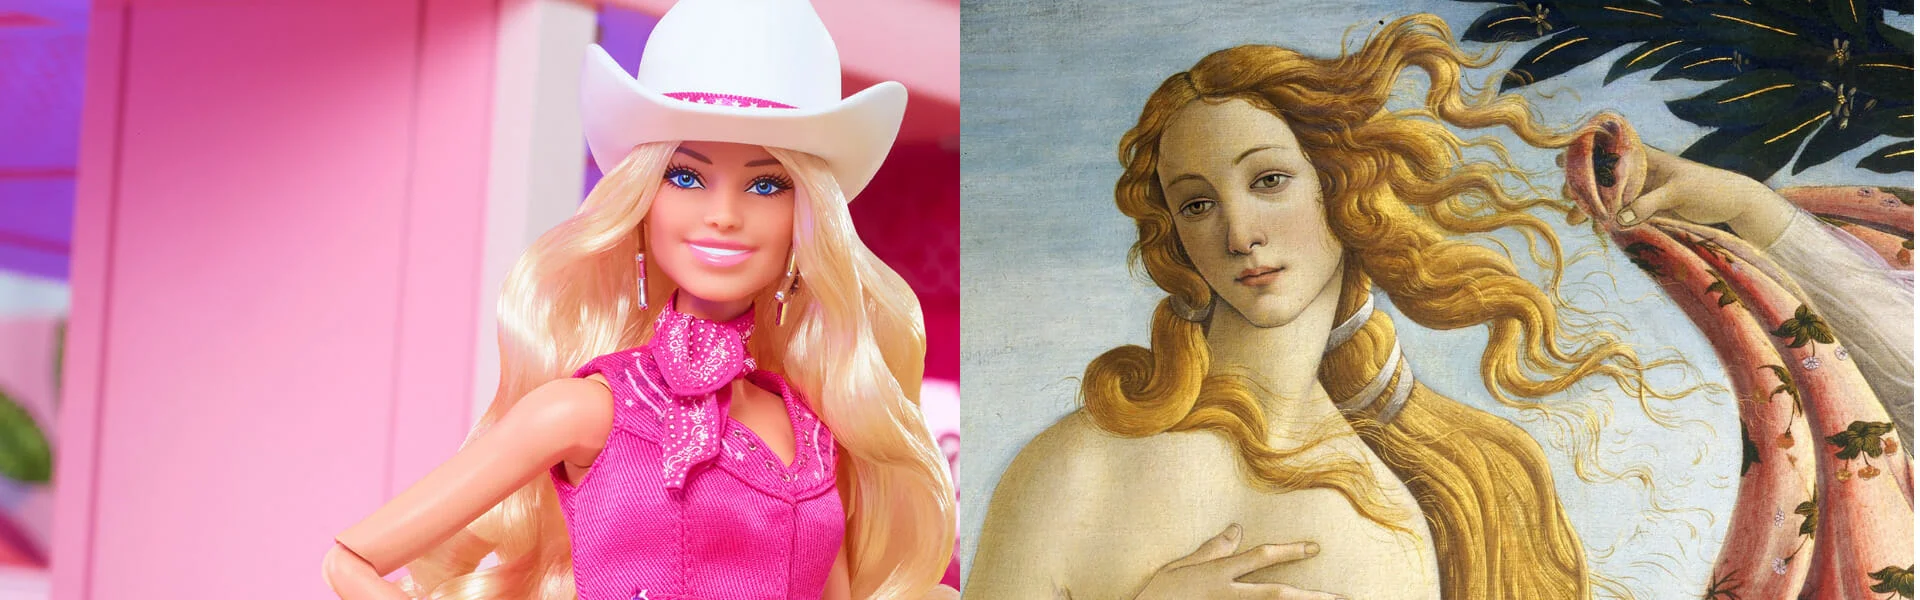 Barbie e La nascita di Venere | Icone di bellezza nei secoli